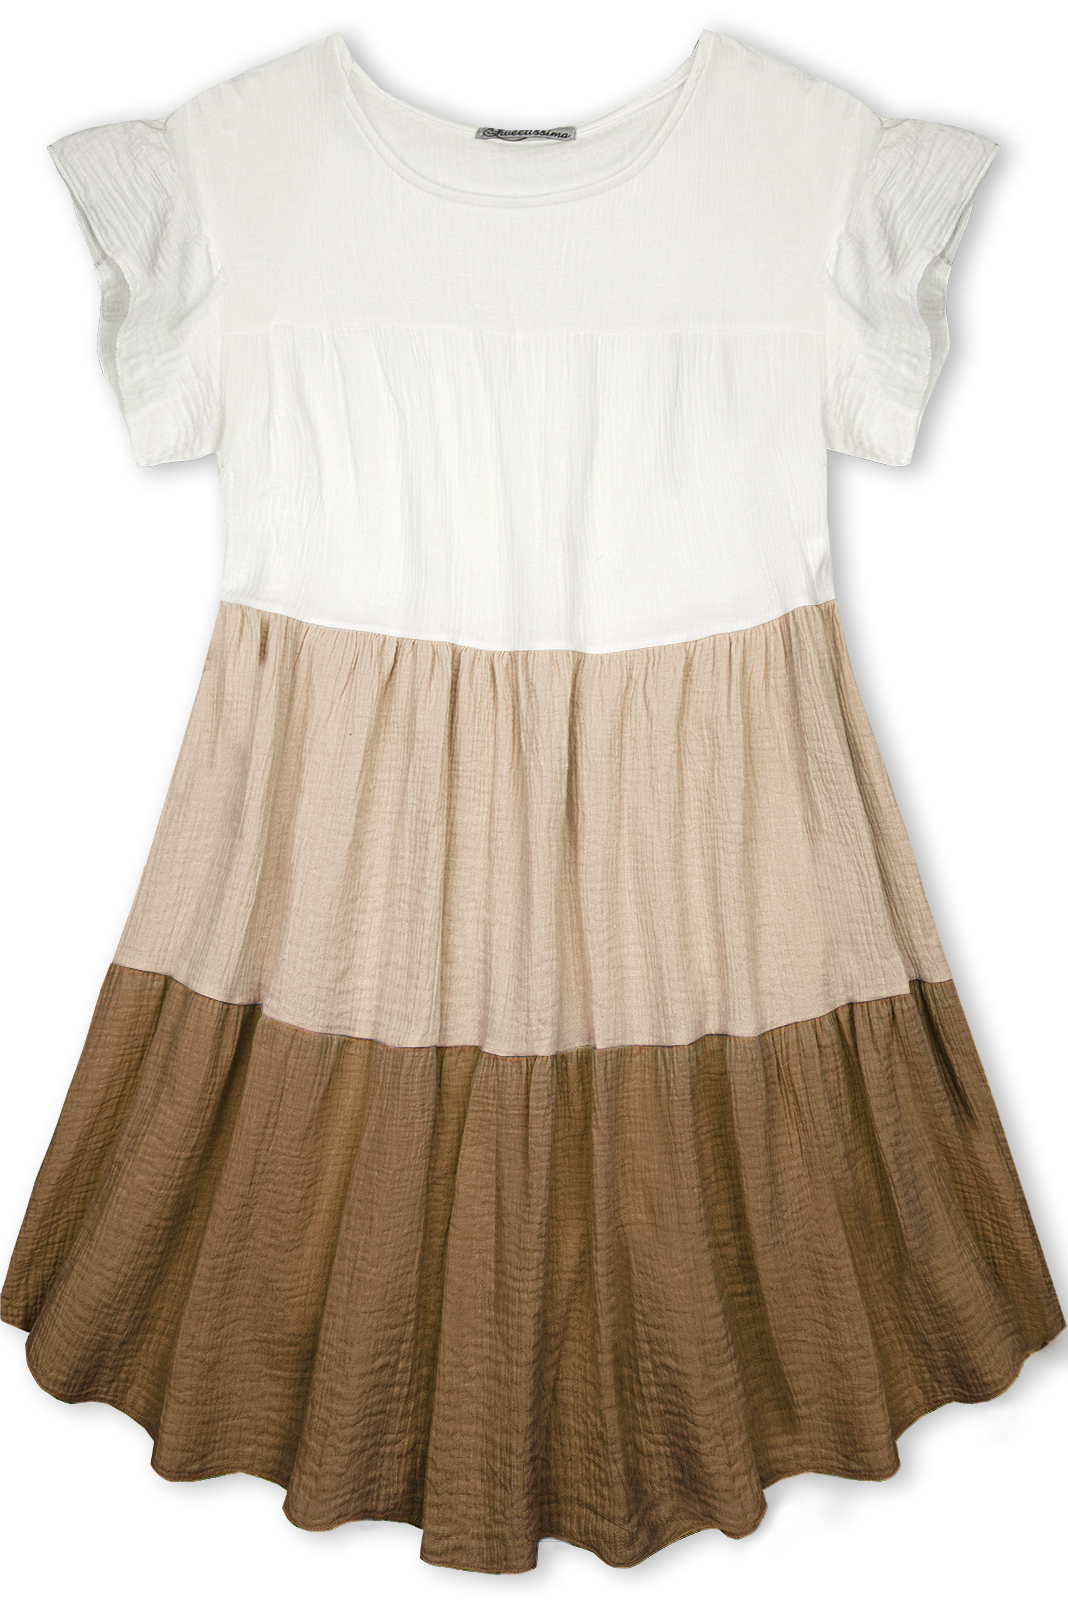 Bavlnené šaty biela/cappuccino/hnedá